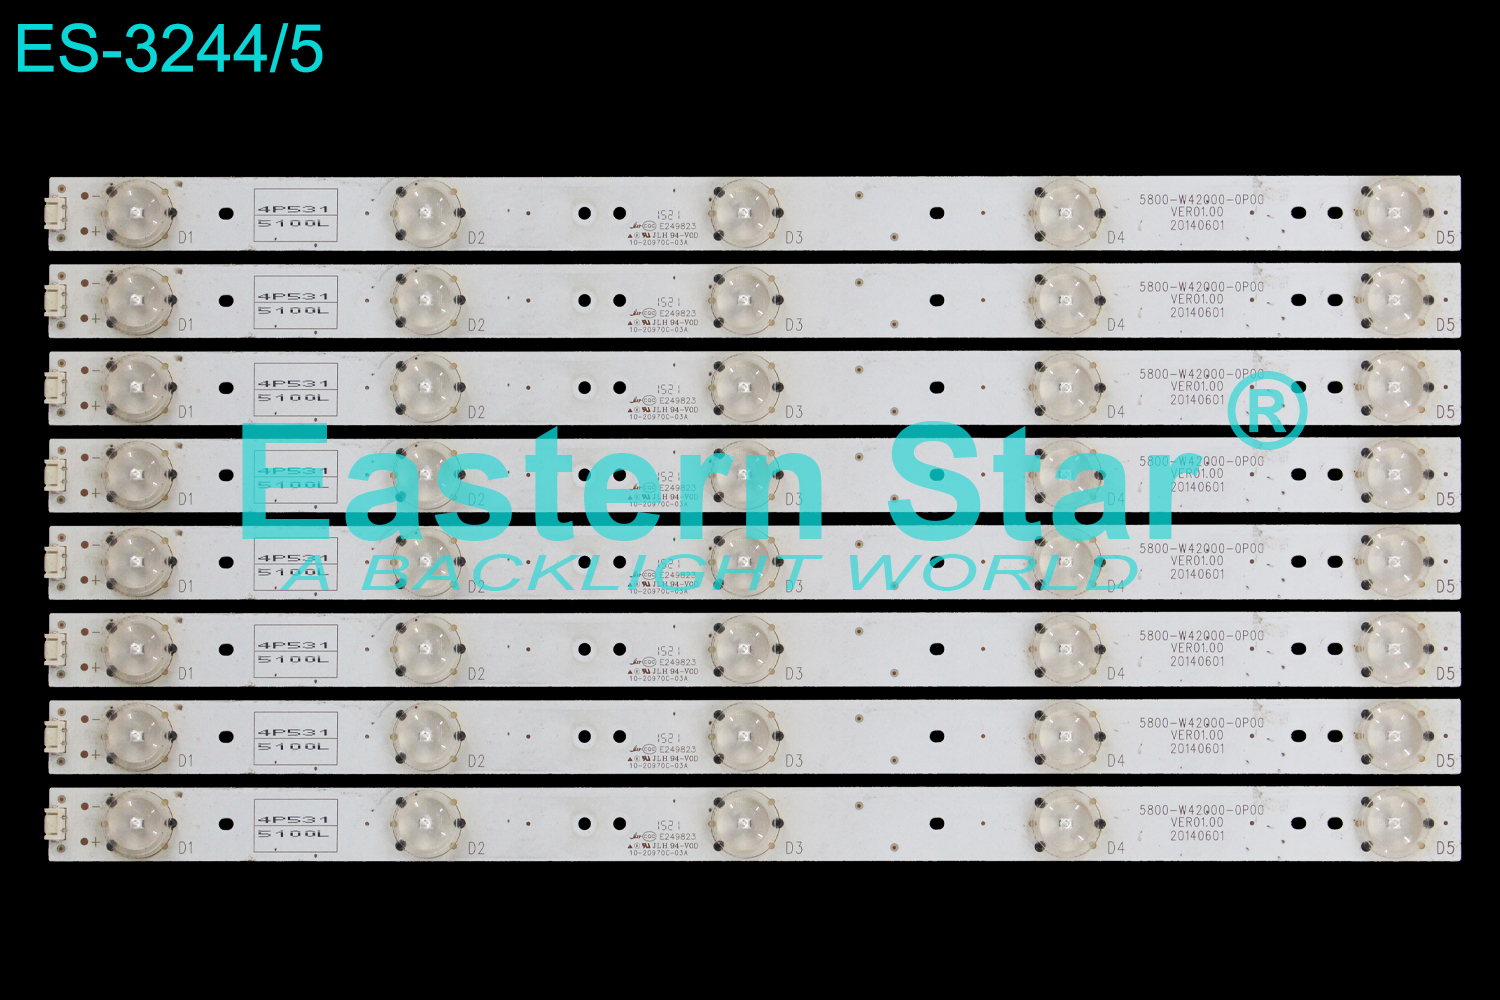 ES-3244 LED TV Backlight use for 42" Skyworth 42E5ERS,42E5CHR 5800-W42000-0P00 LED STRIP(8)